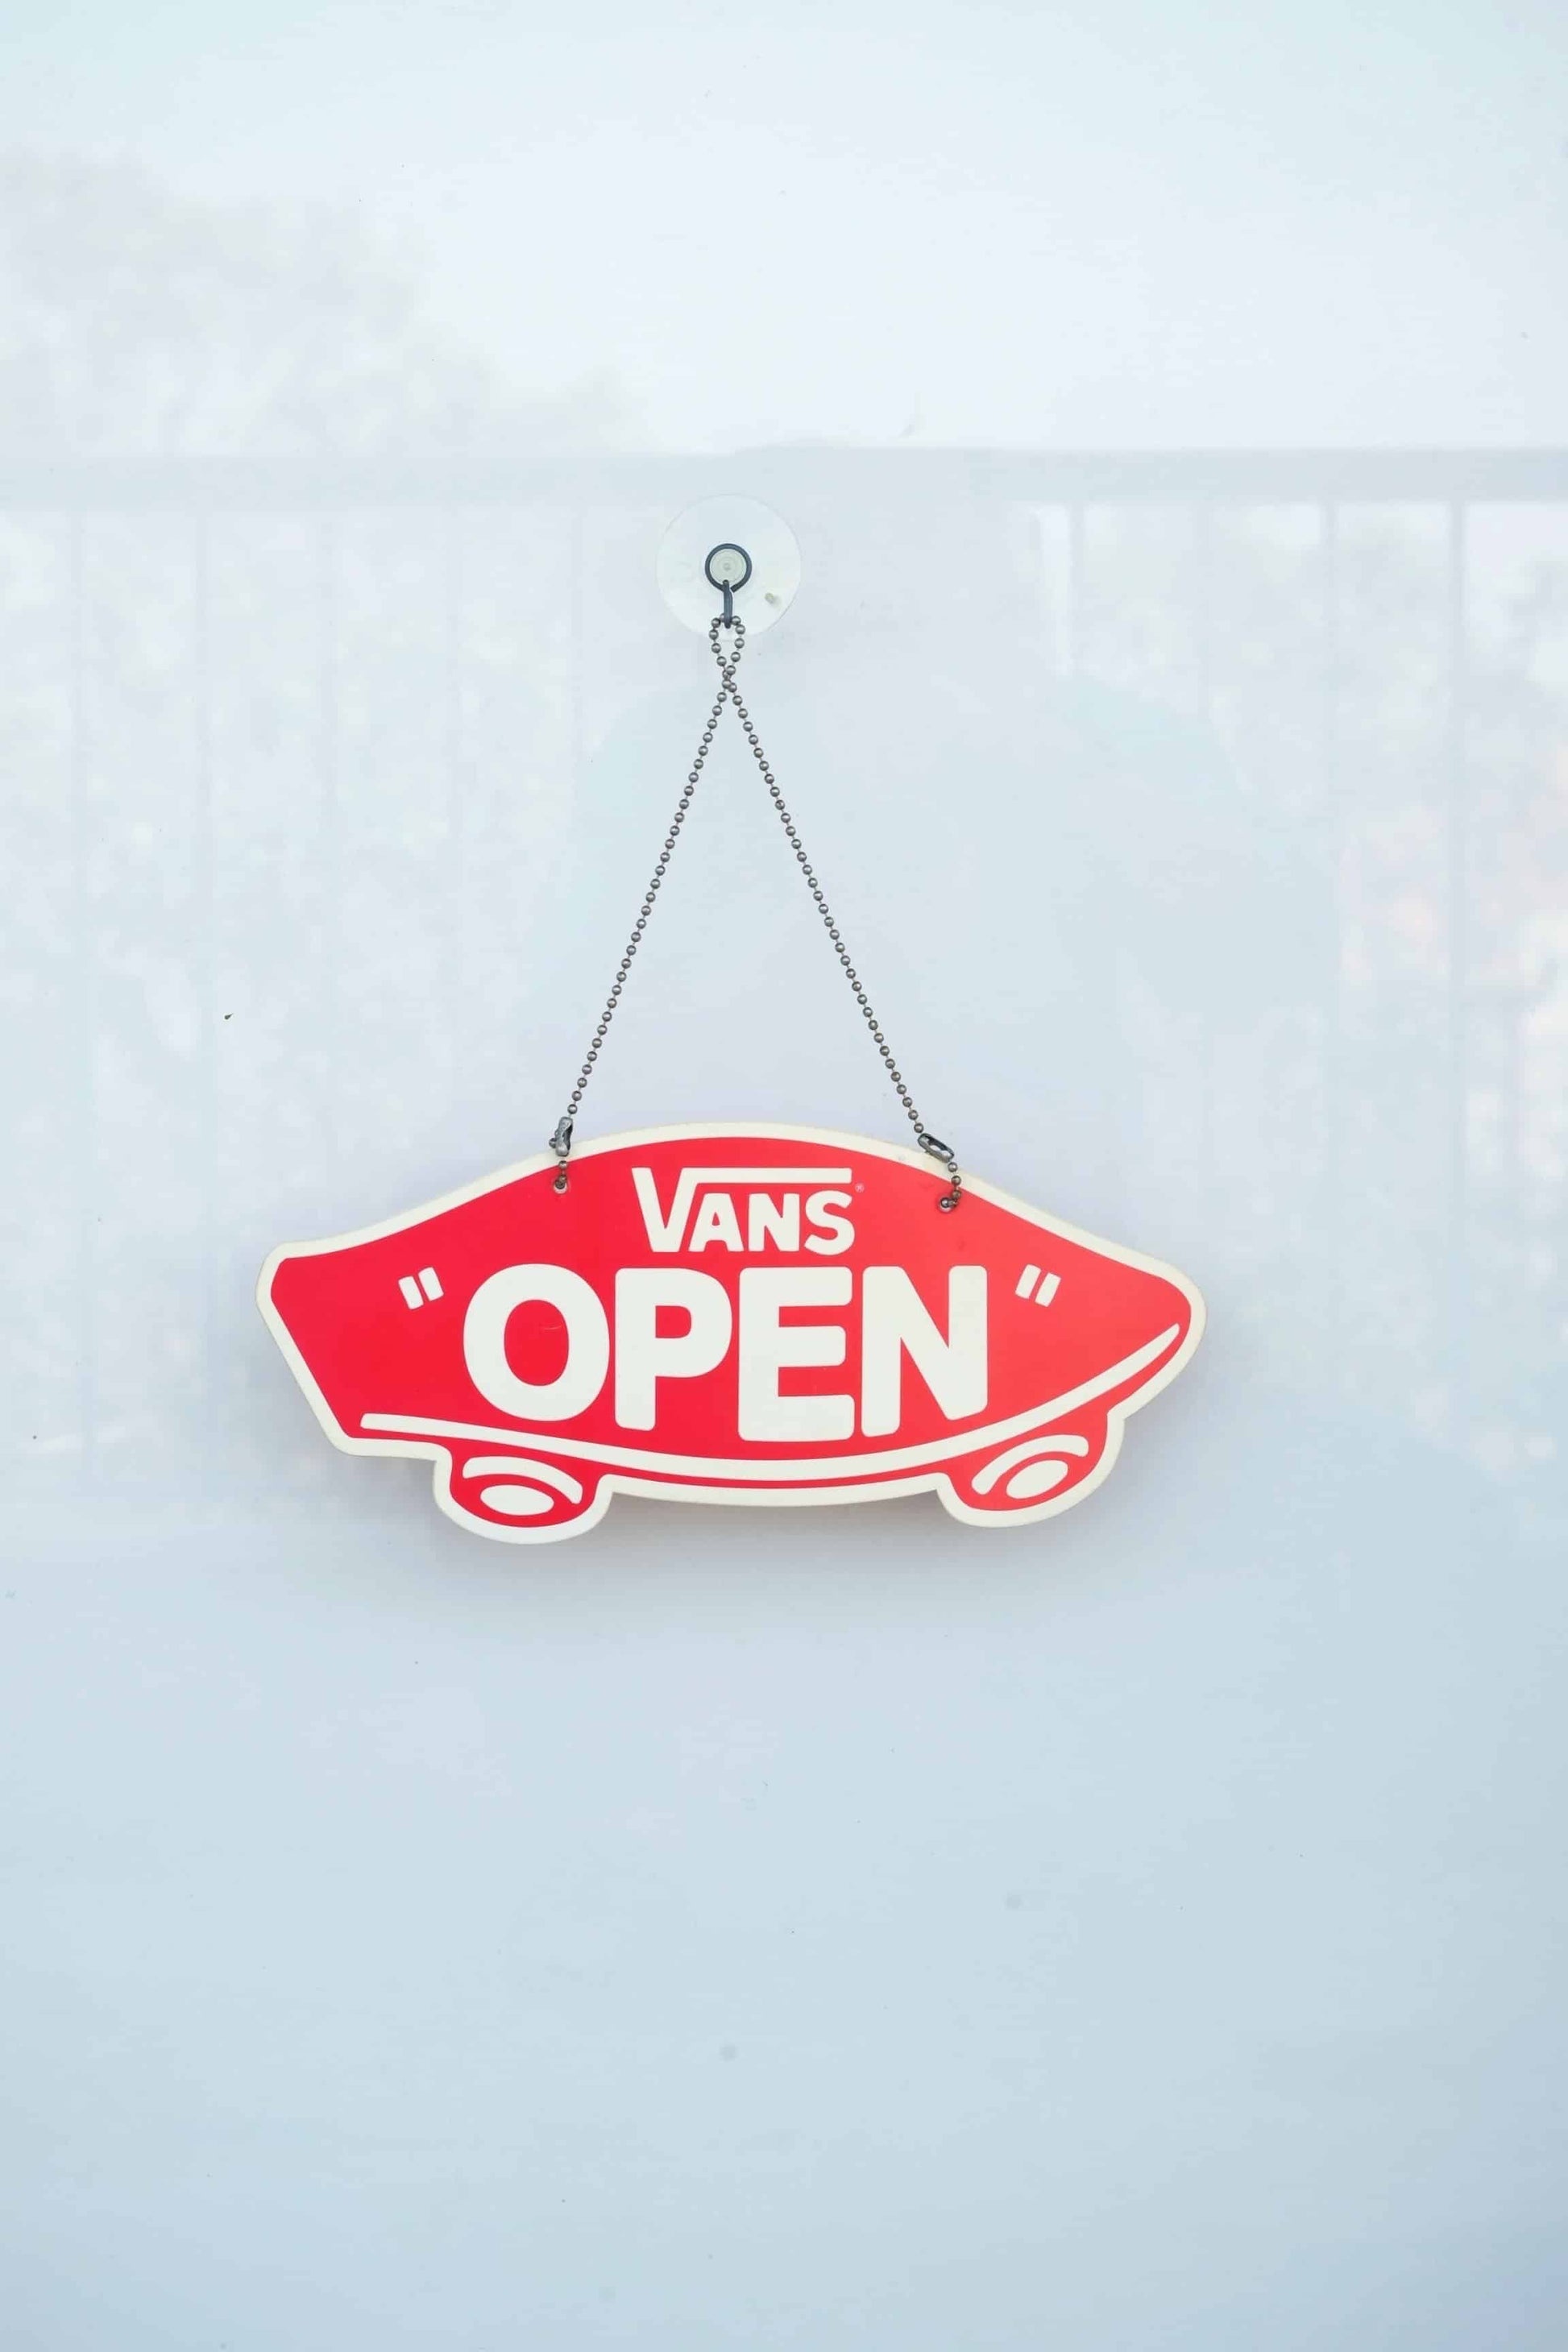 VANS Open/Closed Door Sign on white background